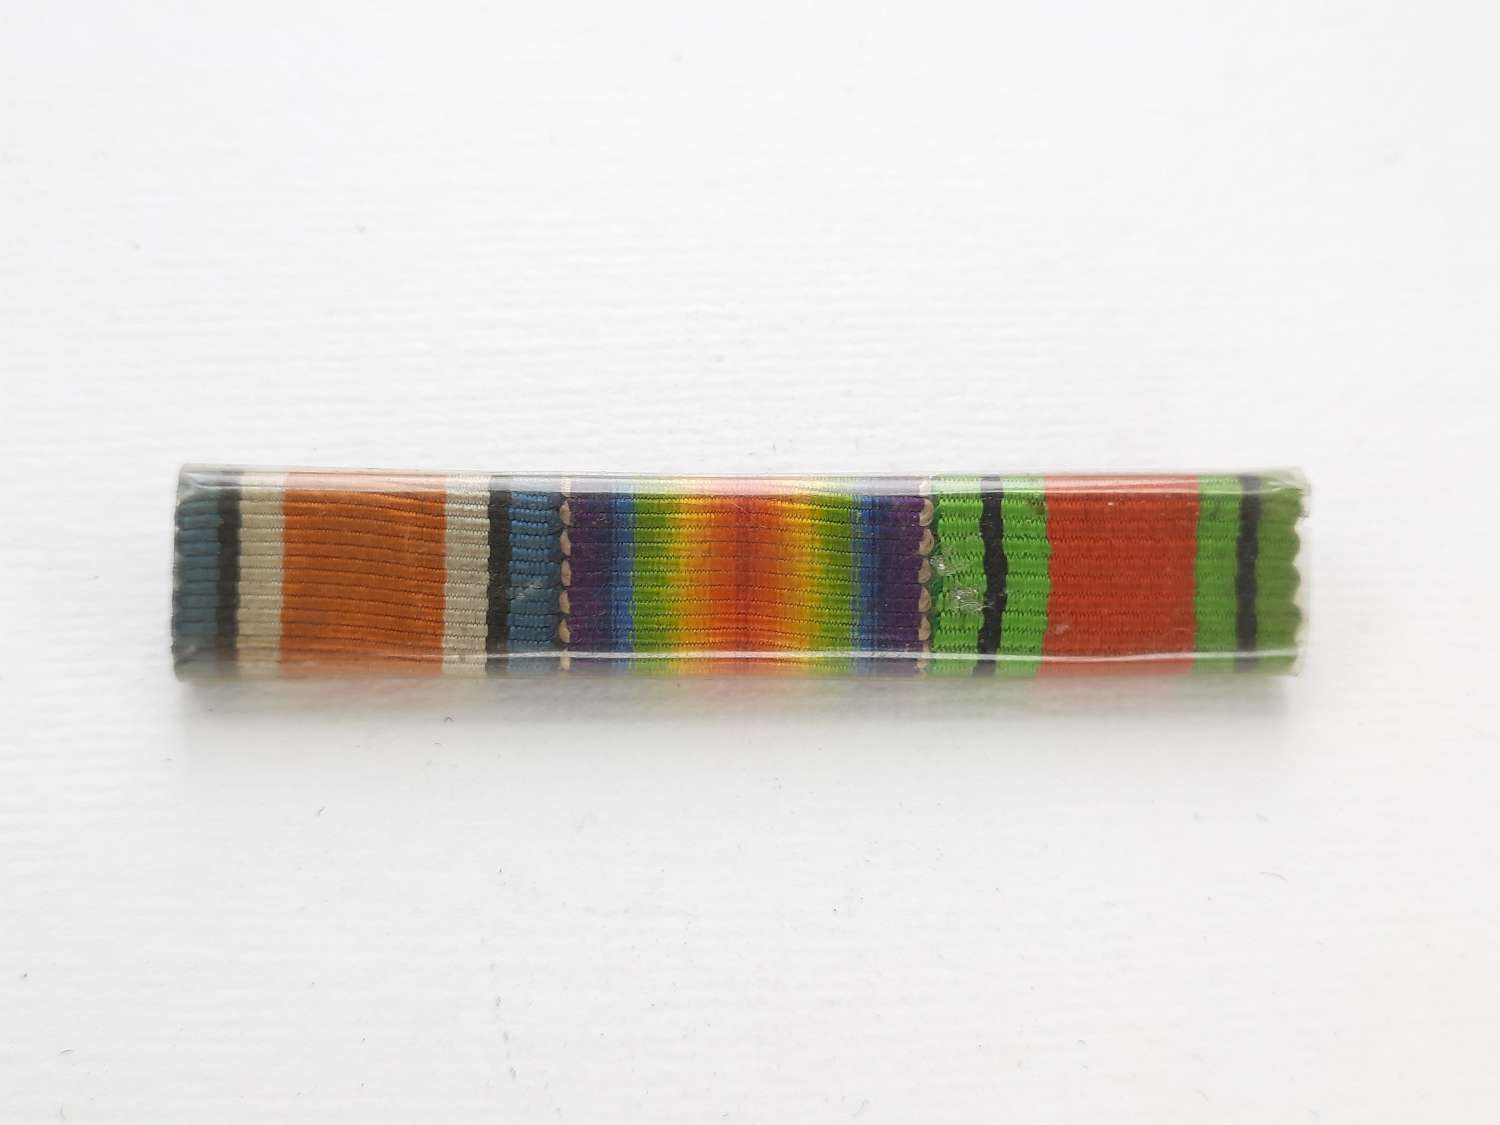 WW1 miniature Medal Ribbon Bar